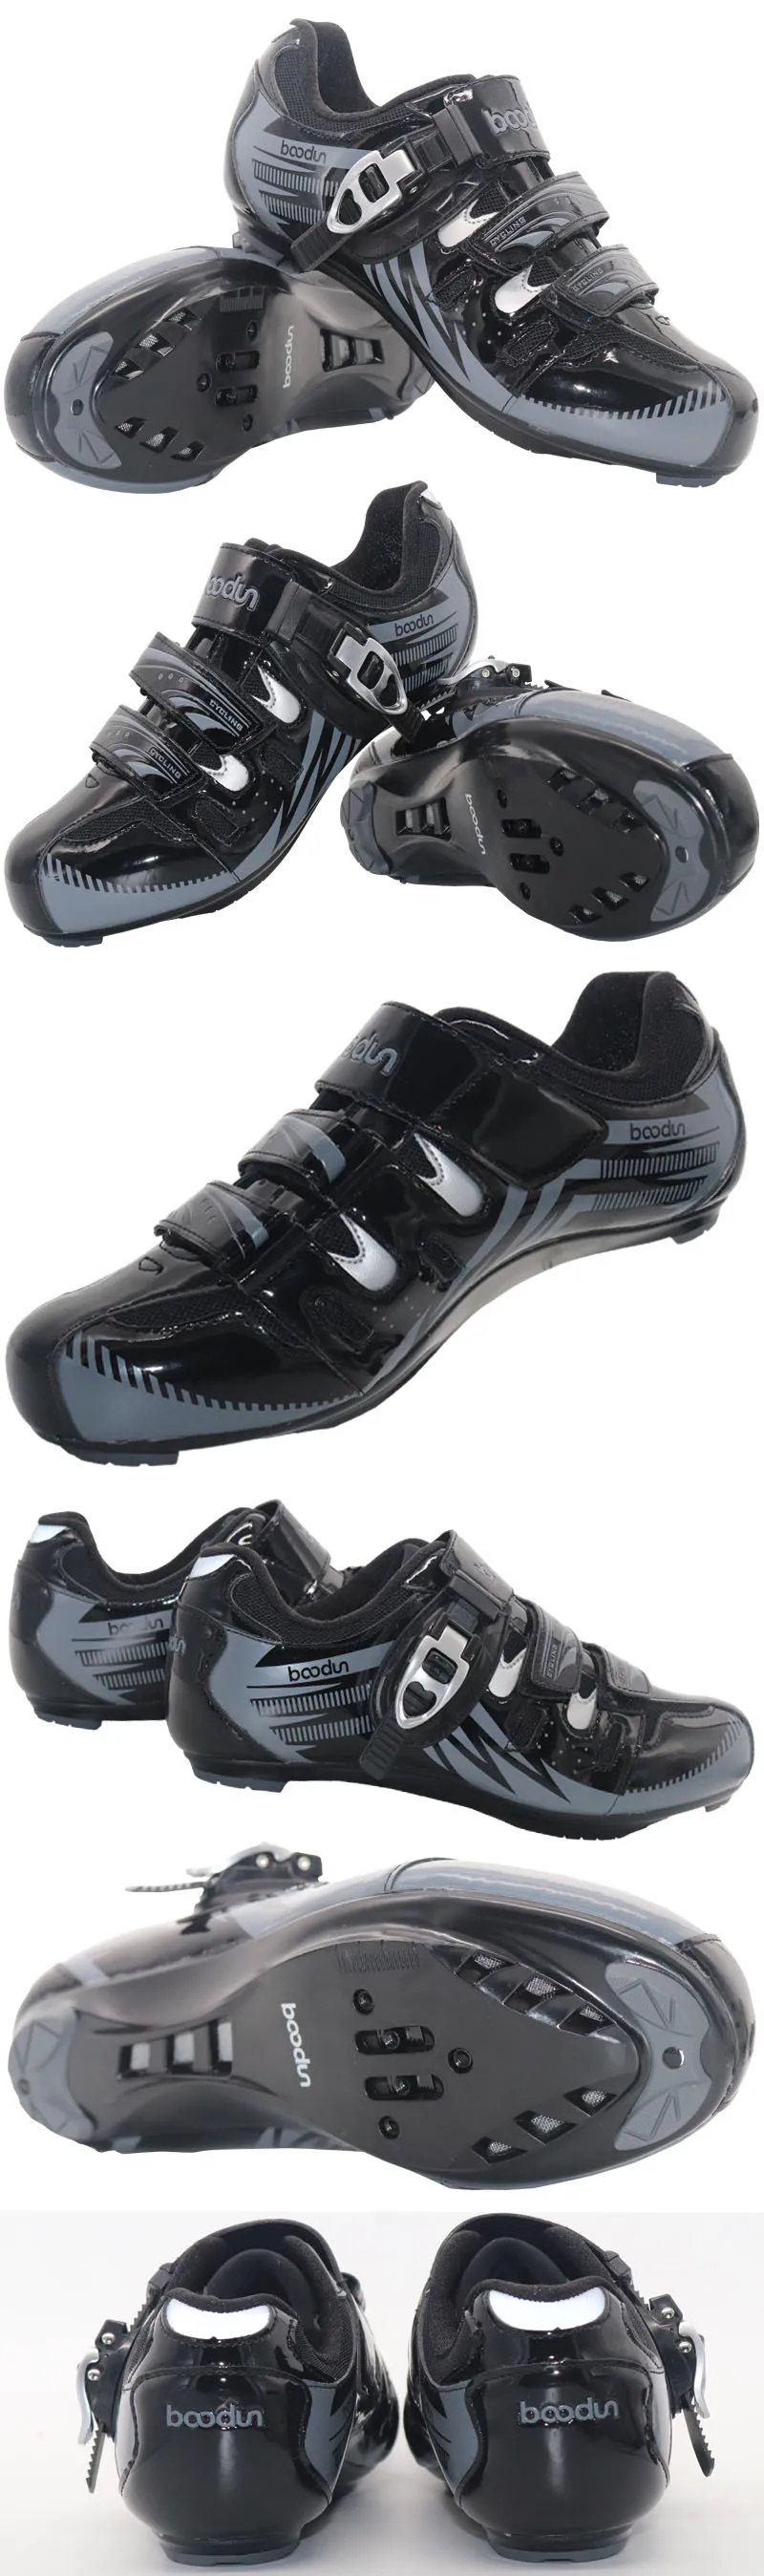 Doobun Road велосипедная обувь для мужчин и женщин дышащая шоссейная велосипедная обувь авто-замок велосипедный спортивная обувь/тапки Ciclismo